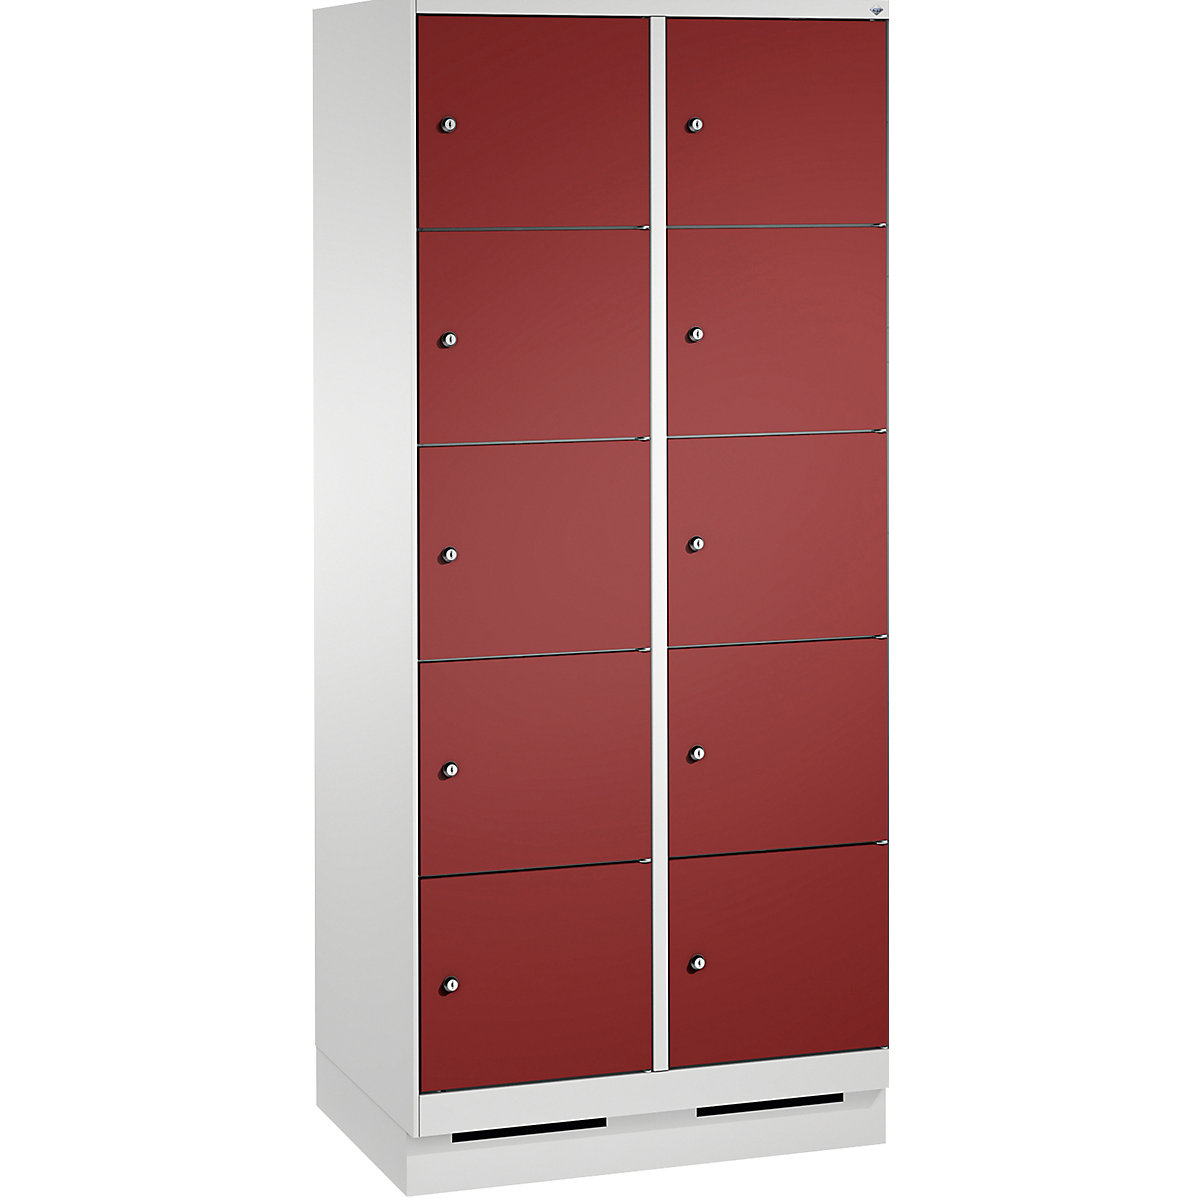 Armoire à casiers sur socle EVOLO – C+P, 2 compartiments, 5 casiers chacun, largeur compartiments 400 mm, gris clair / rouge rubis-6